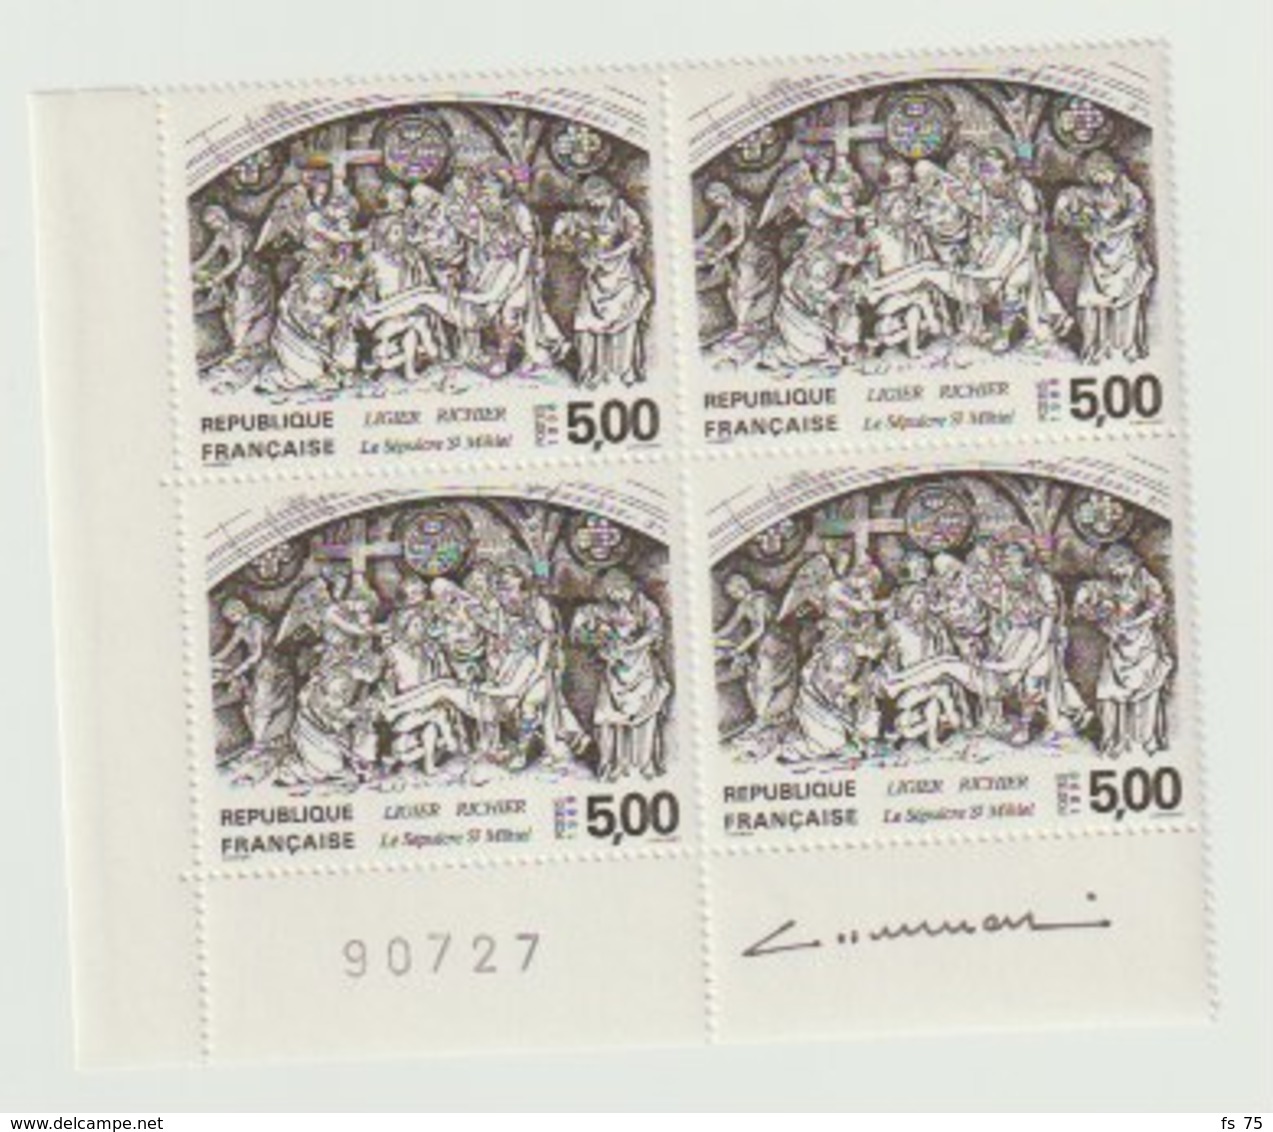 FRANCE - N°2553 - 5F - SEPULCRE DE ST MIHIEL - BLOC DE 4 - SIGNE ALBUISSON - Unused Stamps